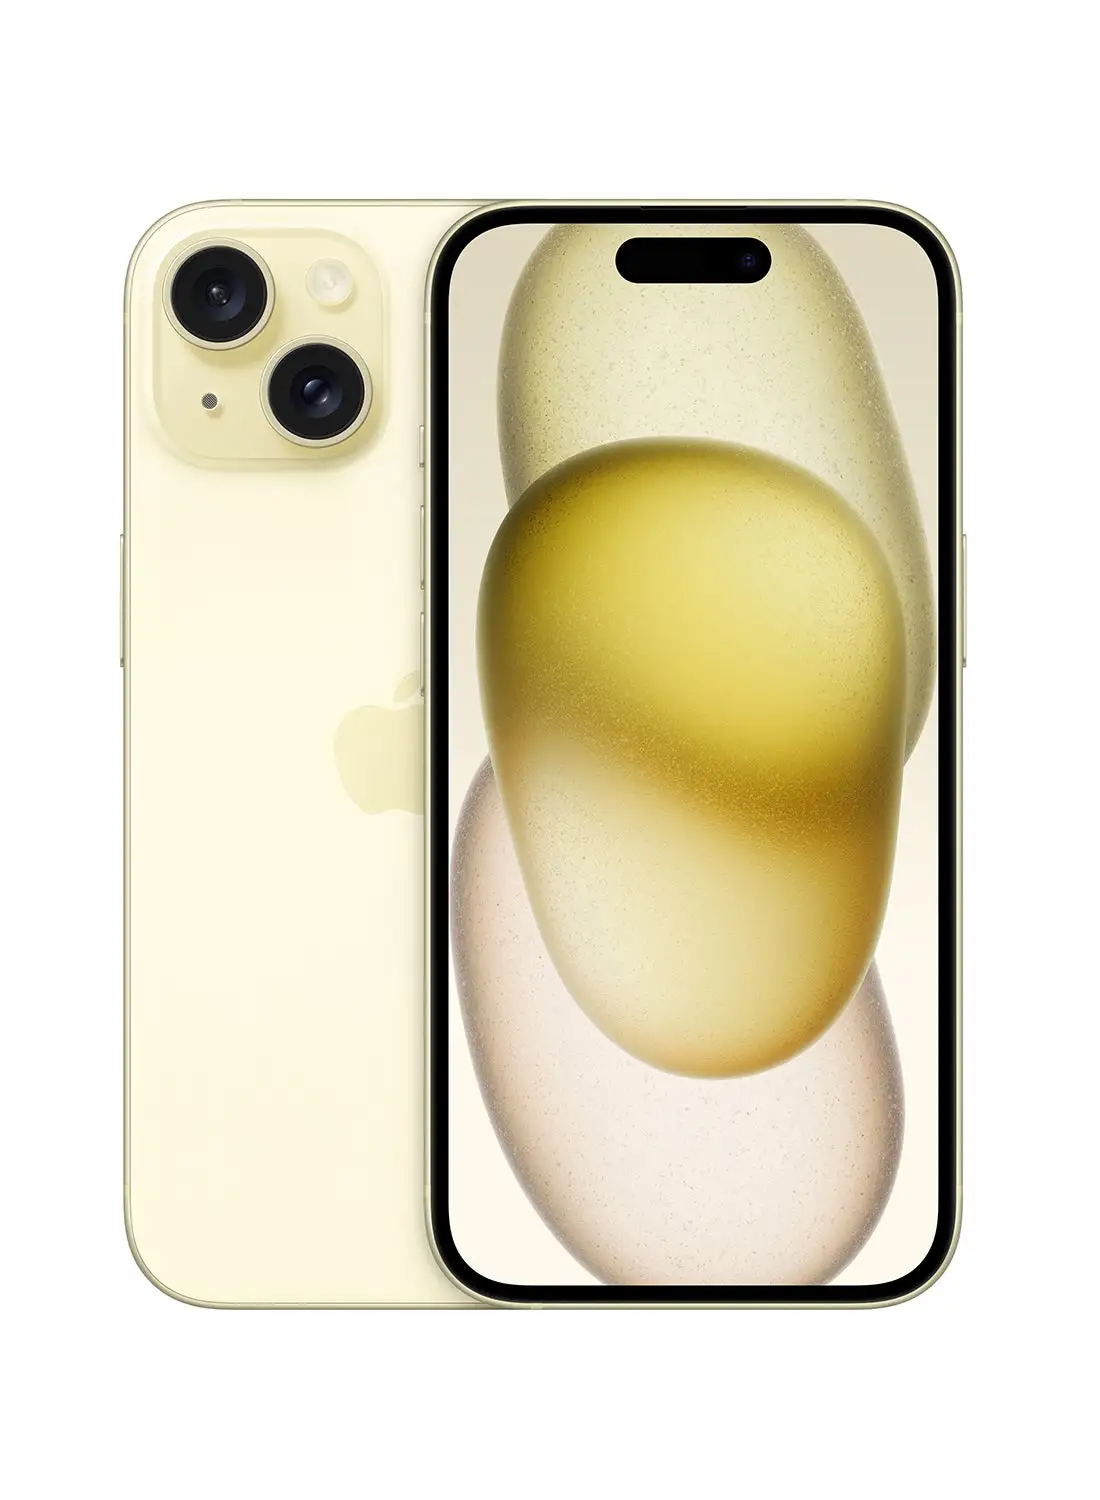 هاتف أبل آيفون 15 بسعة 256 جيجابايت باللون الأصفر، يدعم تقنية 5G ومزود ببرنامج FaceTime - إصدار الشرق الأوسط